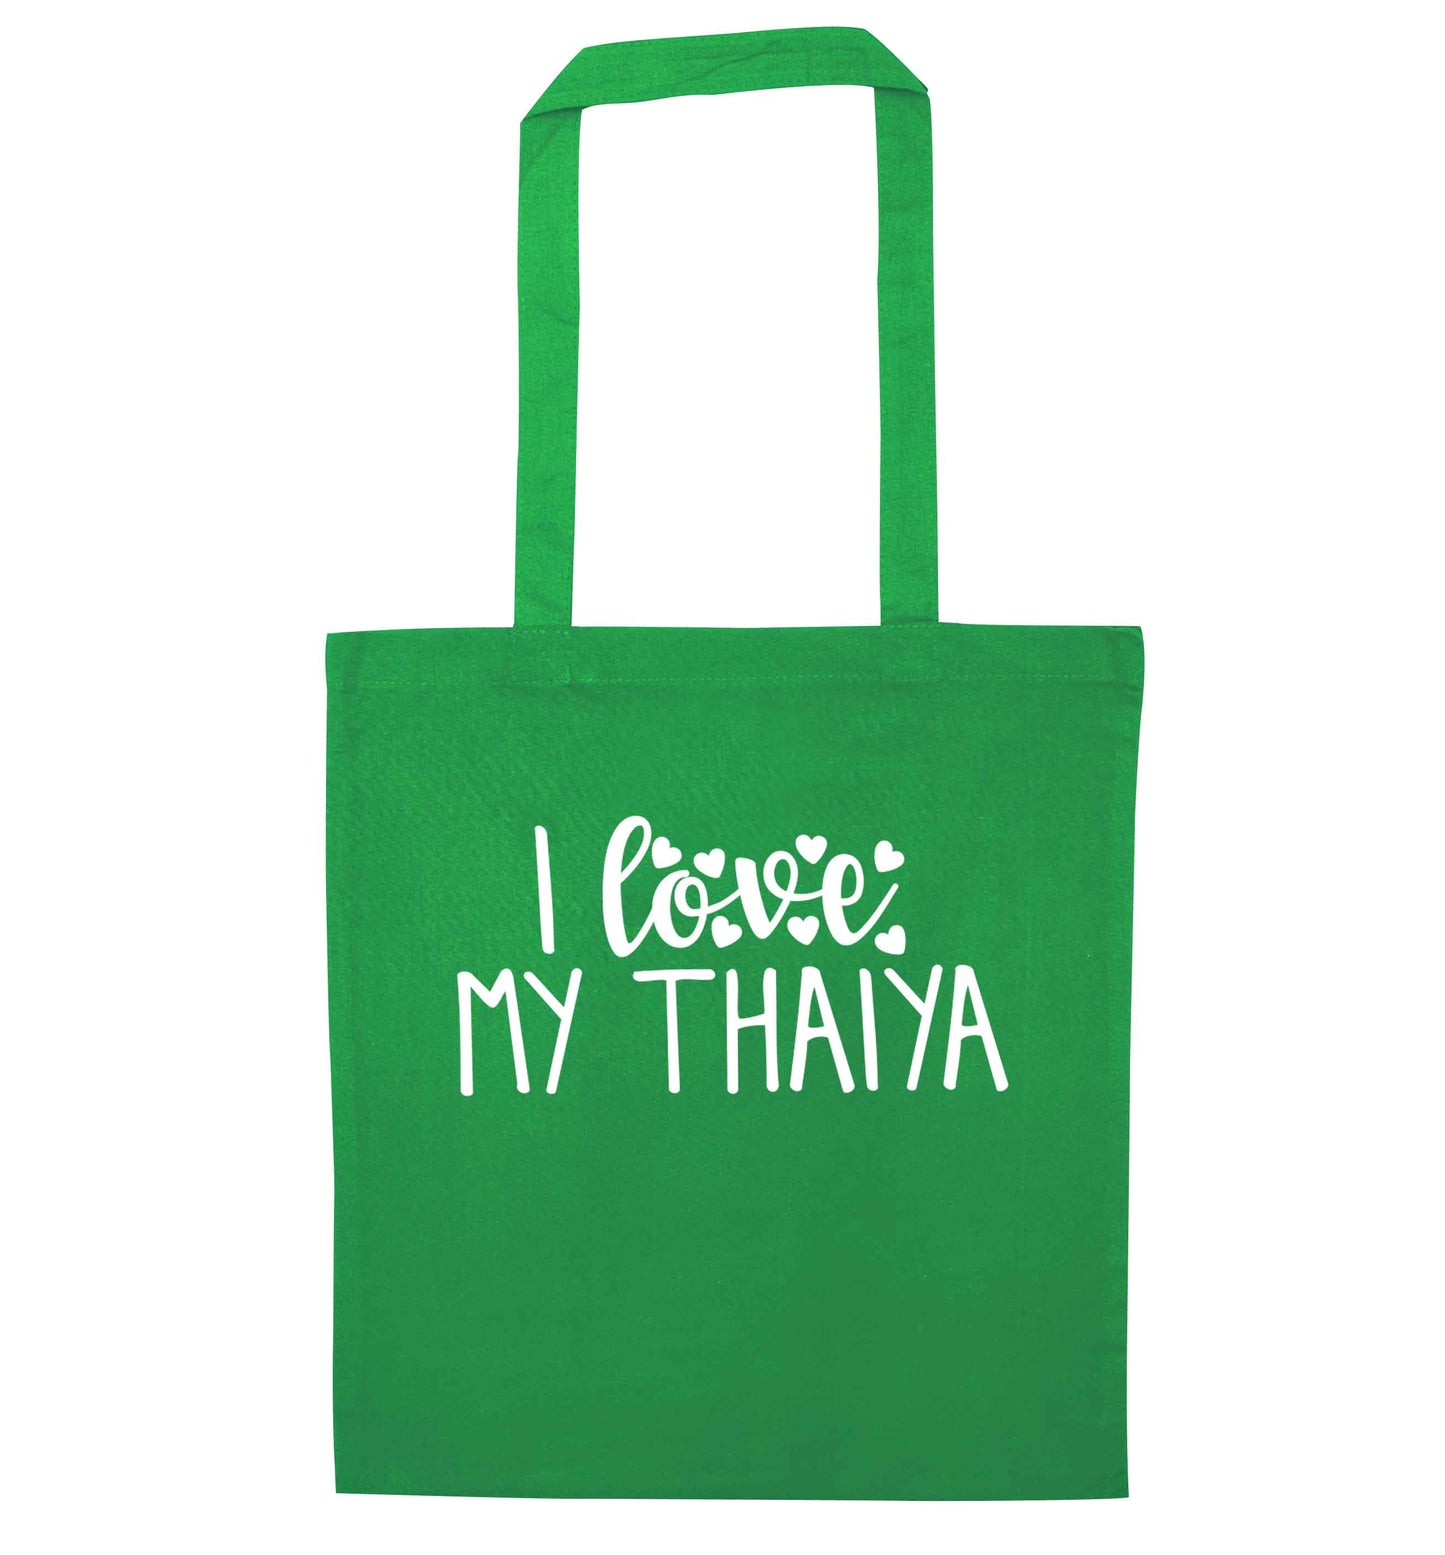 I love my thaiya green tote bag